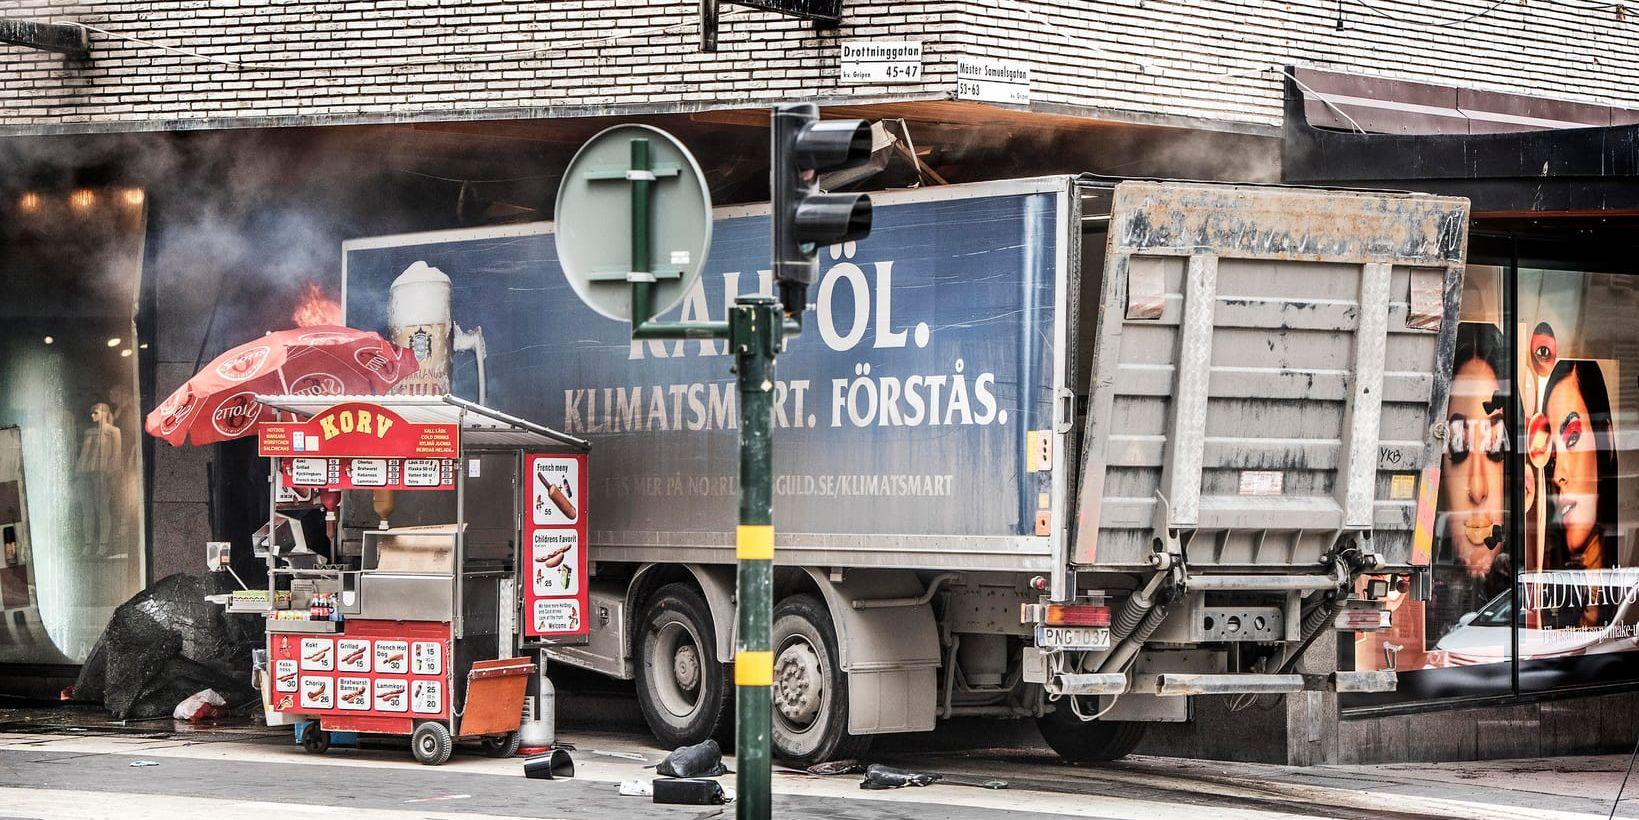 Sveriges kommuner får råd om hur de kan försvåra fordonsattacker. Bild från dådet i Stockholm förra året. Arkivbild.